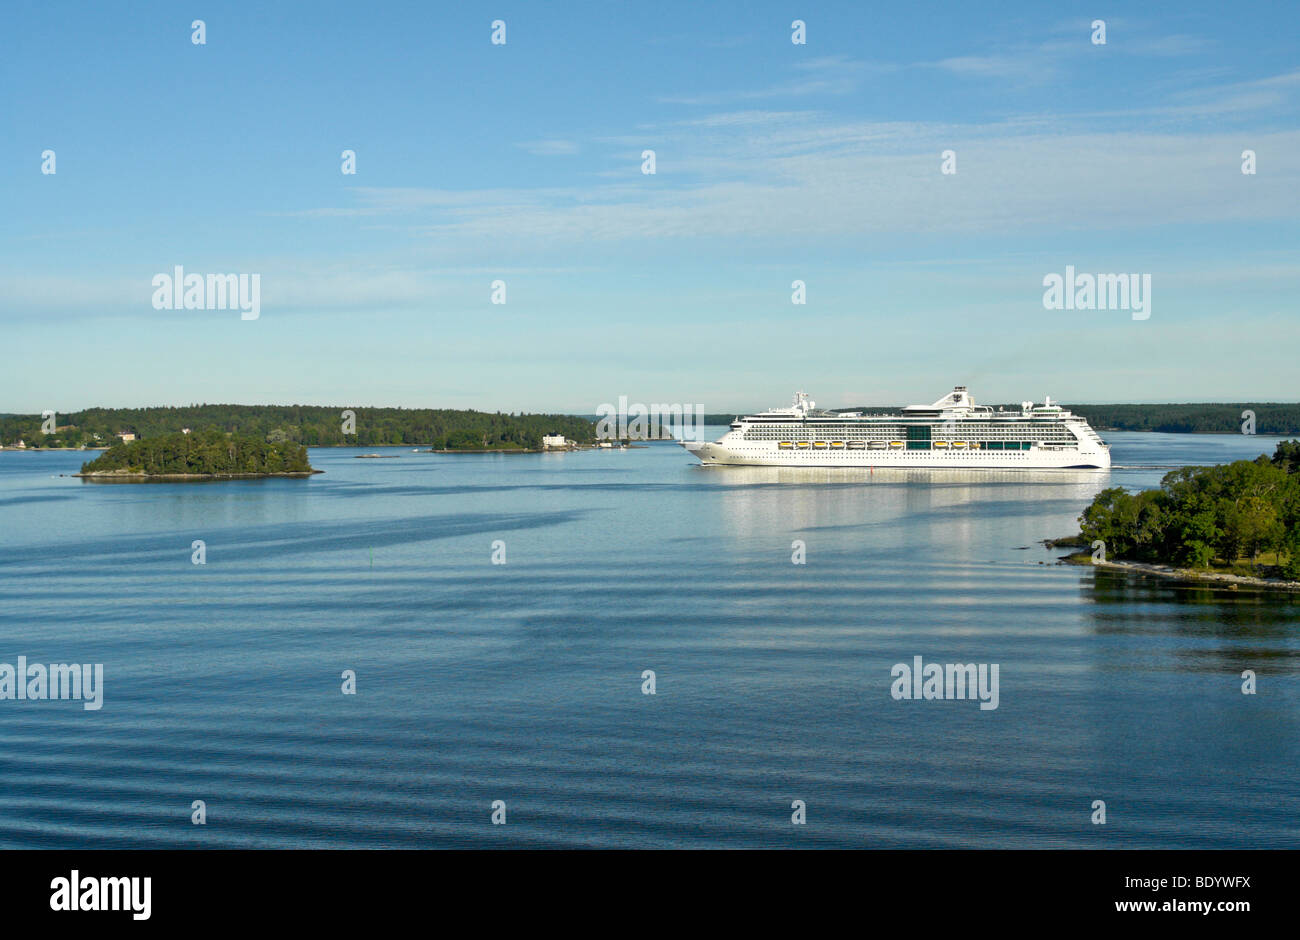 Kreuzfahrtschiff der Royal Caribbean International, die Jewel of the Seas durch die Schären Segel, wie sie nähert sich Stockholm Schweden Stockfoto